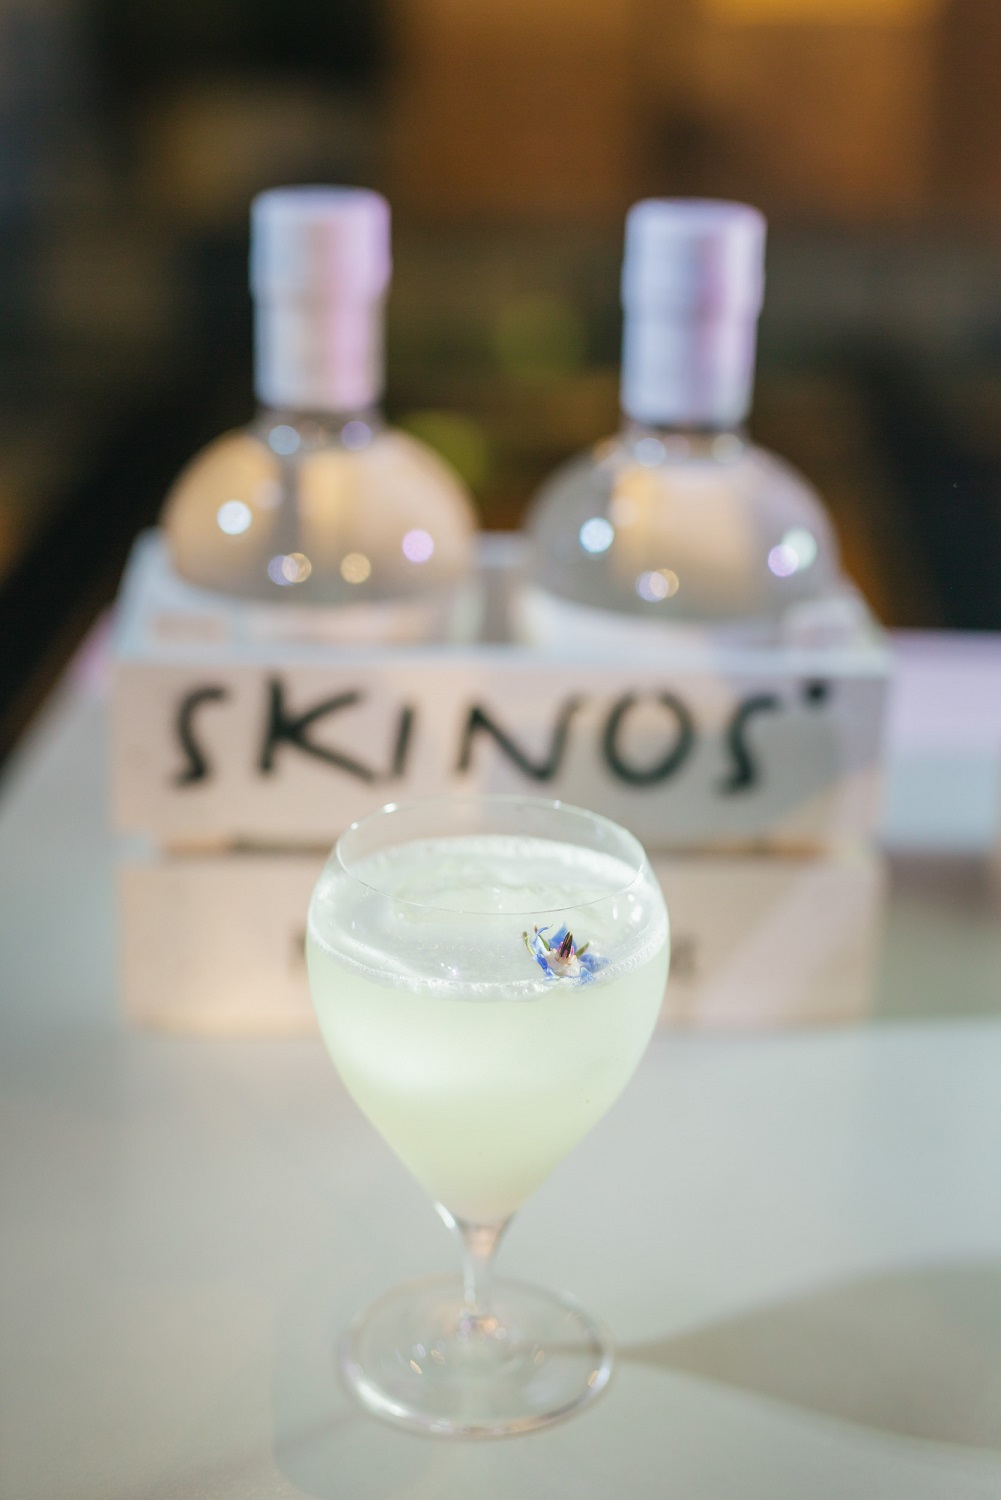 Skinos Mediterranean Cocktails Challenge 2017